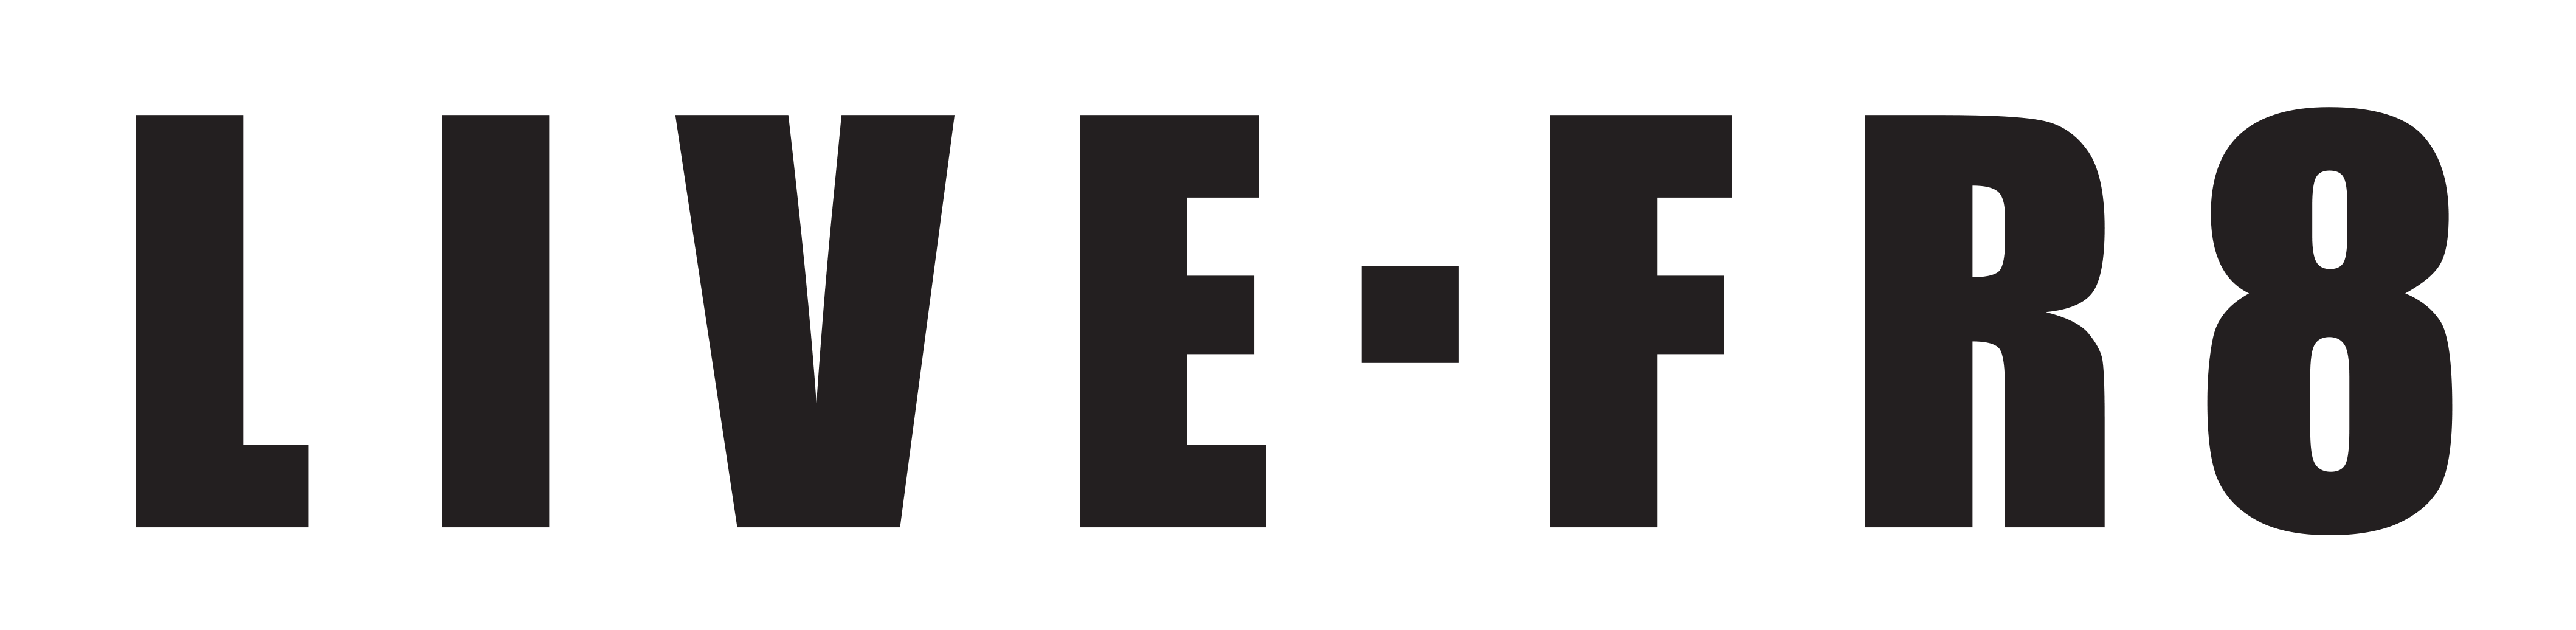 livefr8 logo